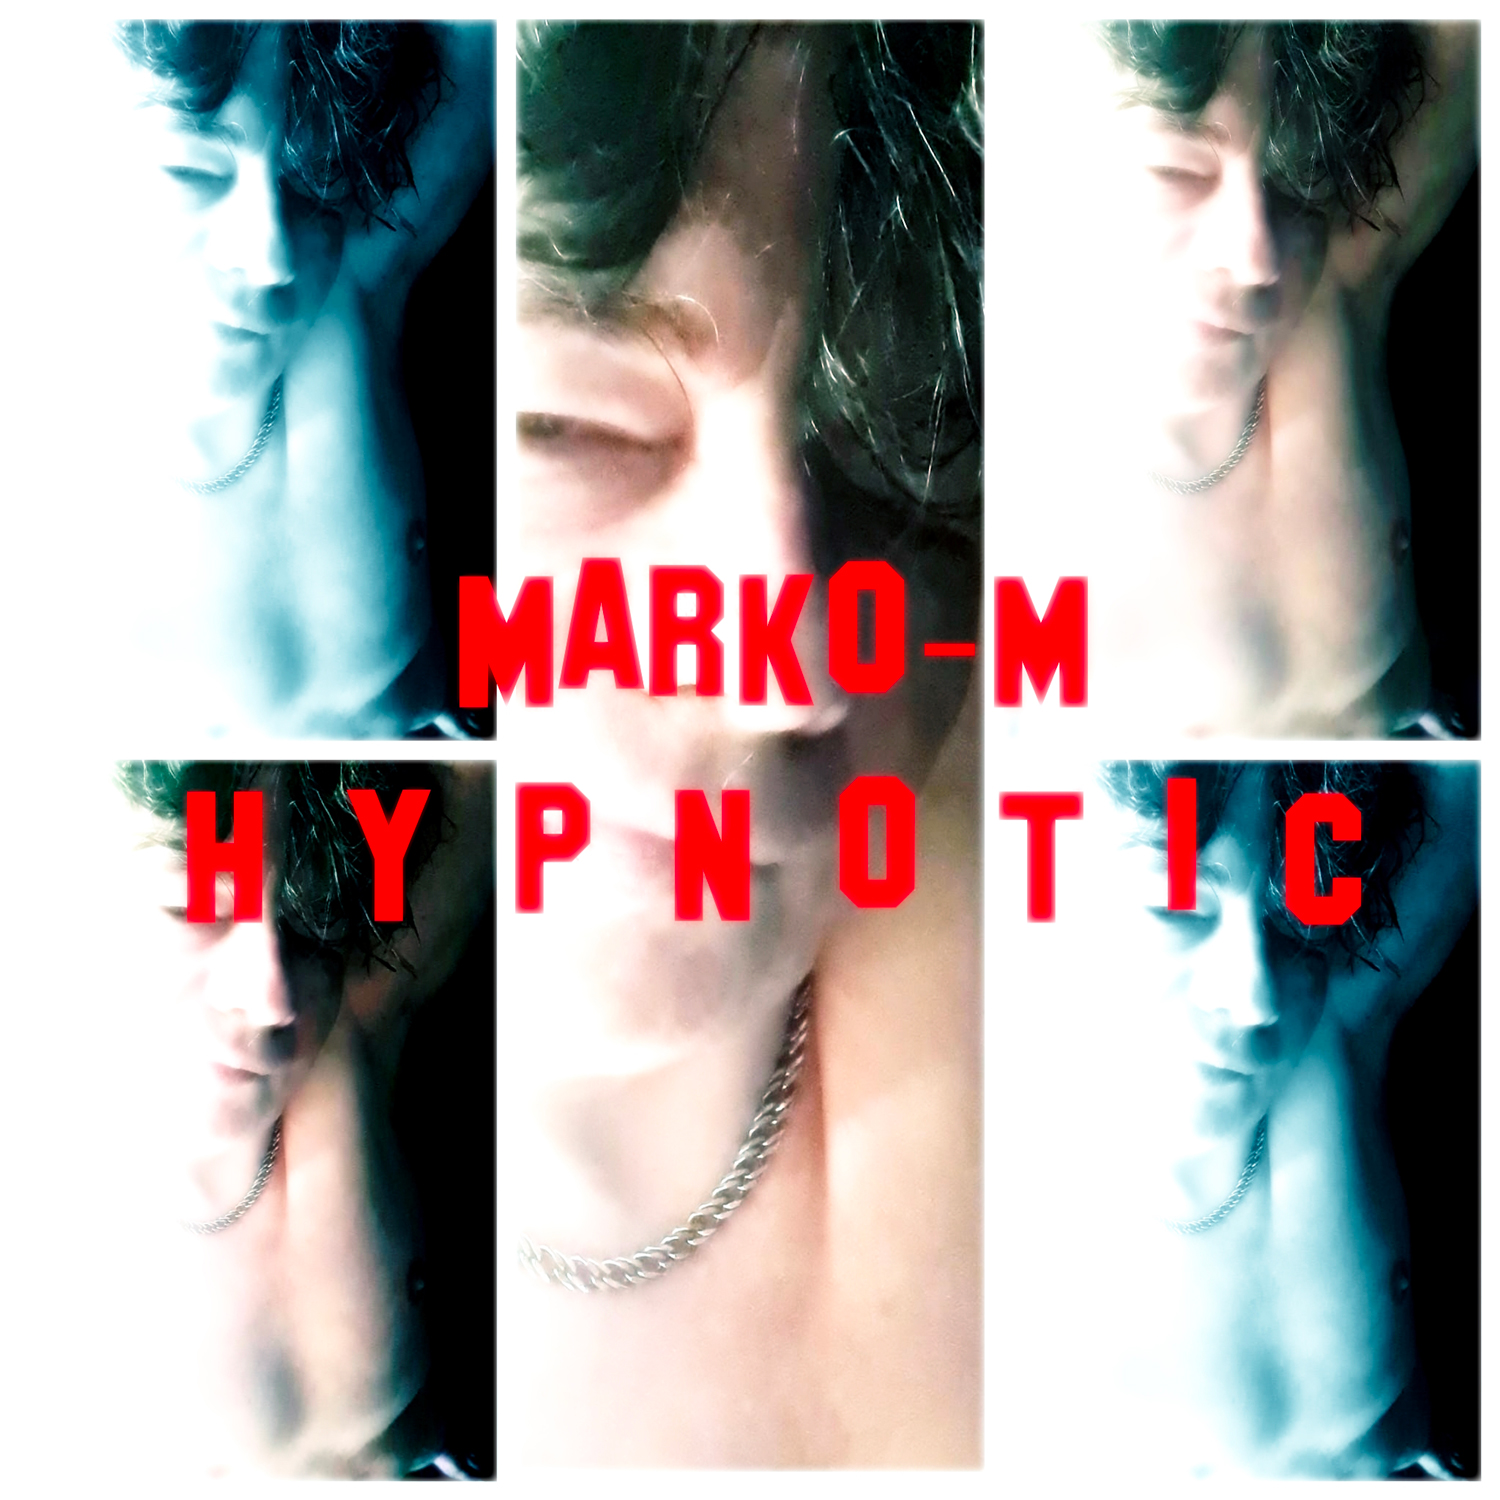 “Hypnotic” is the new Progressive/Techno single by Marko-M